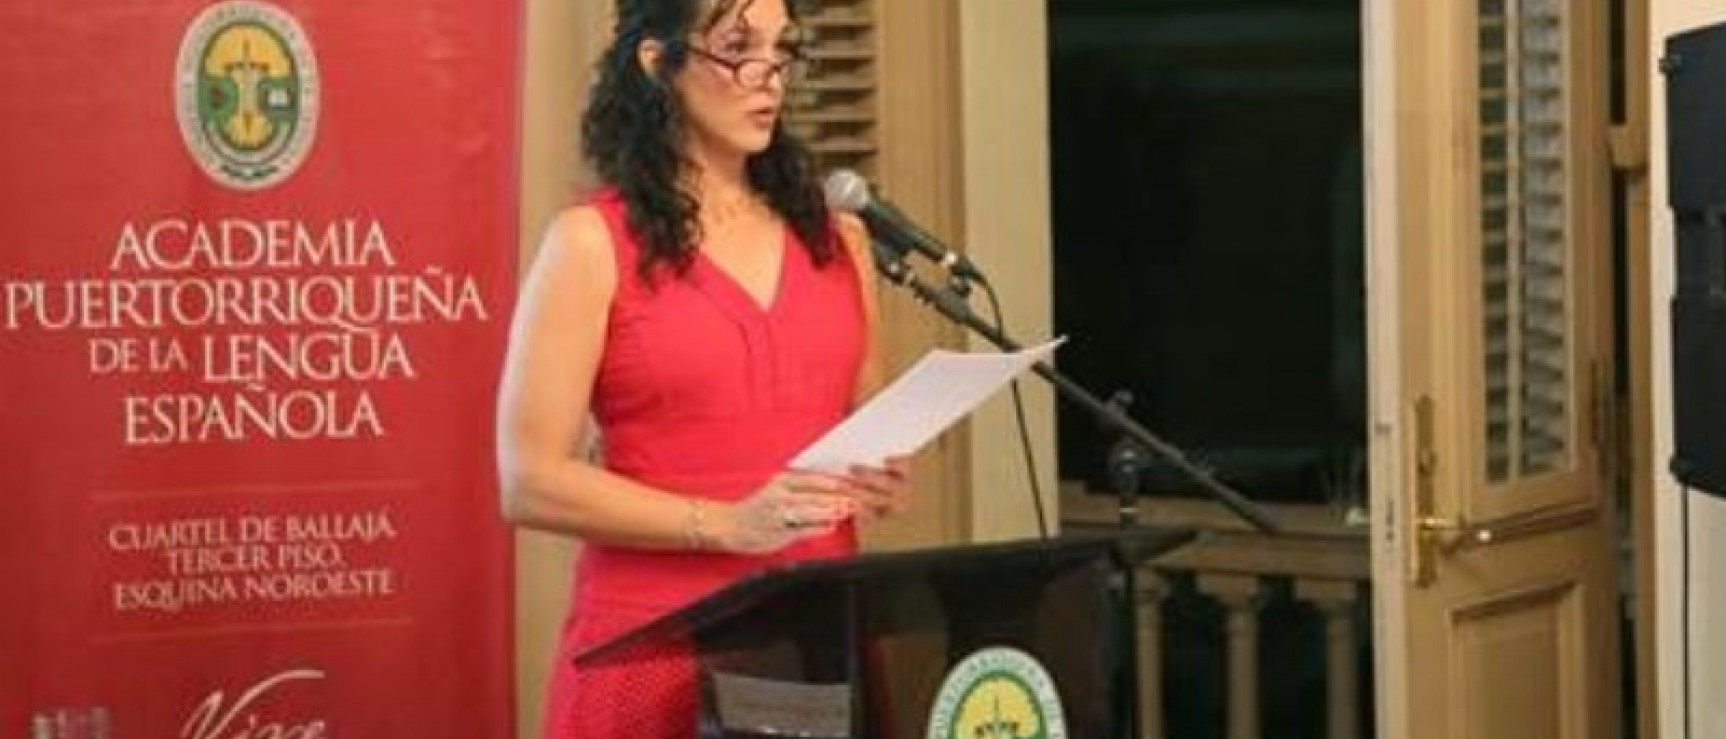 Maia Sherwood durante la lectura de su discurso de ingreso.